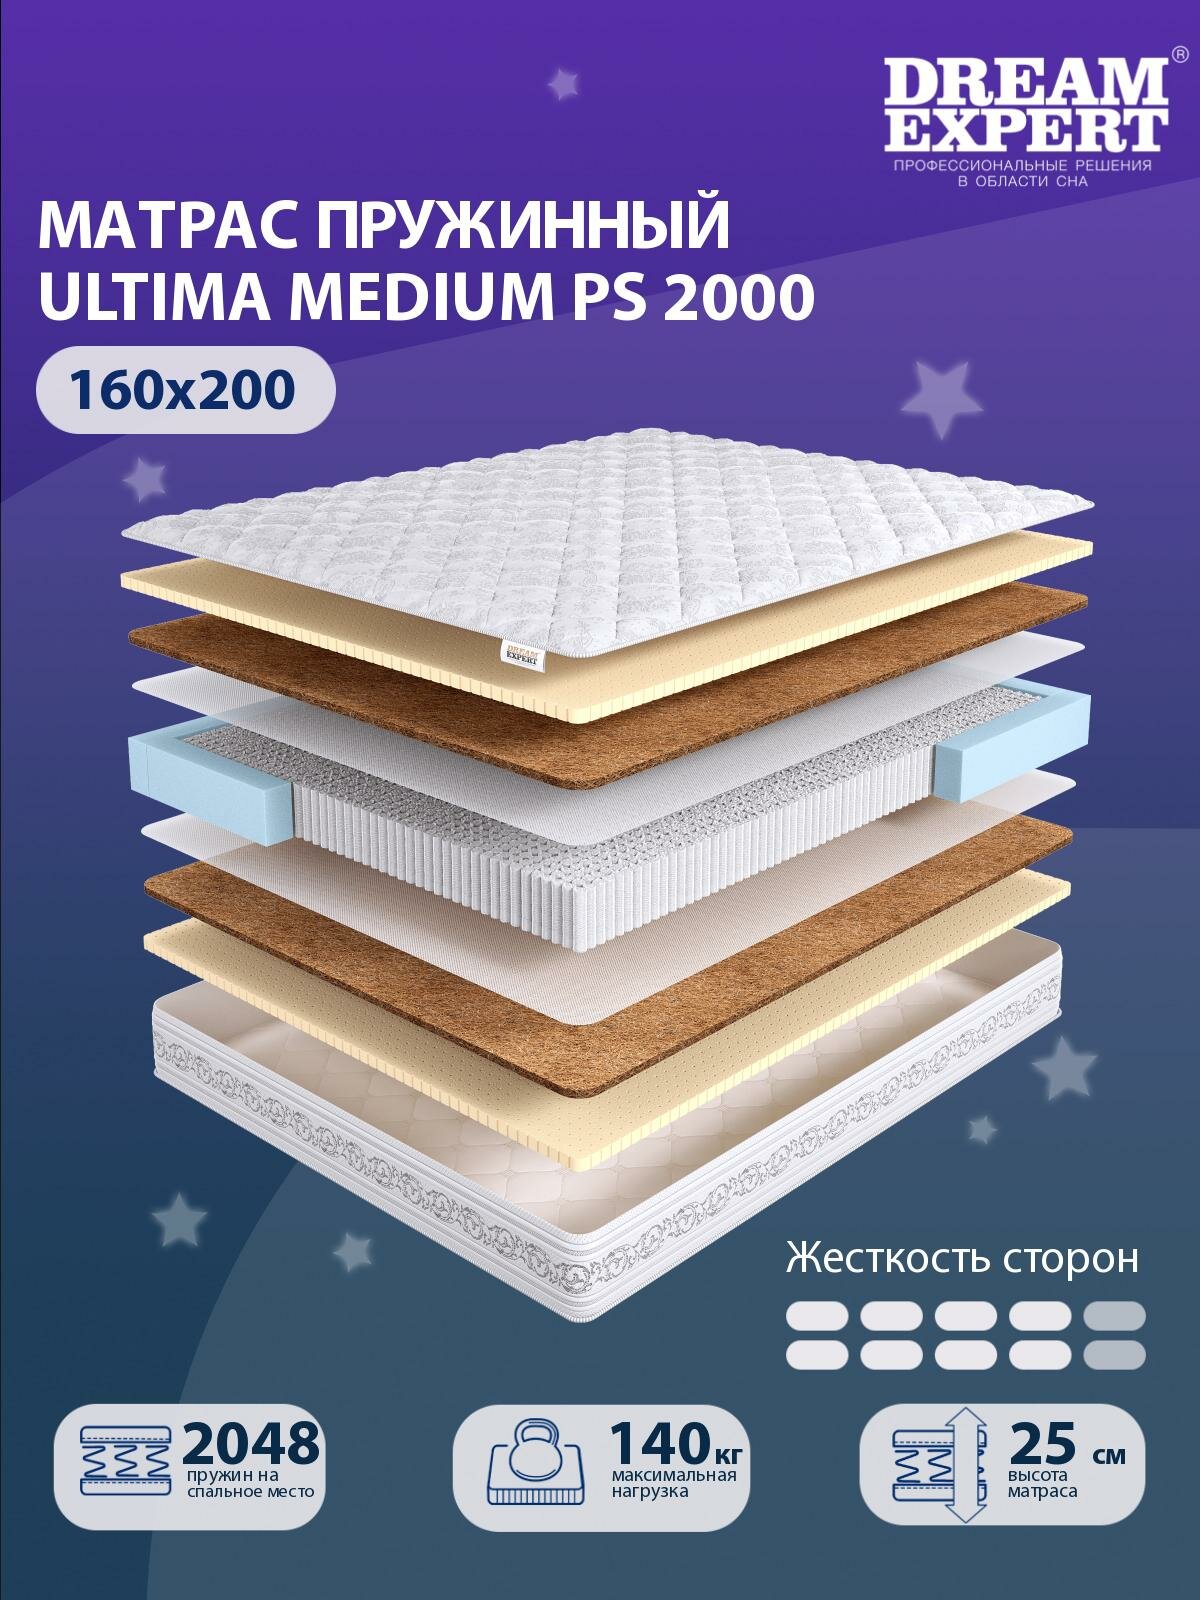 Матрас DreamExpert Ultima Medium PS2000 выше средней жесткости, двуспальный, независимый пружинный блок, на кровать 160x200